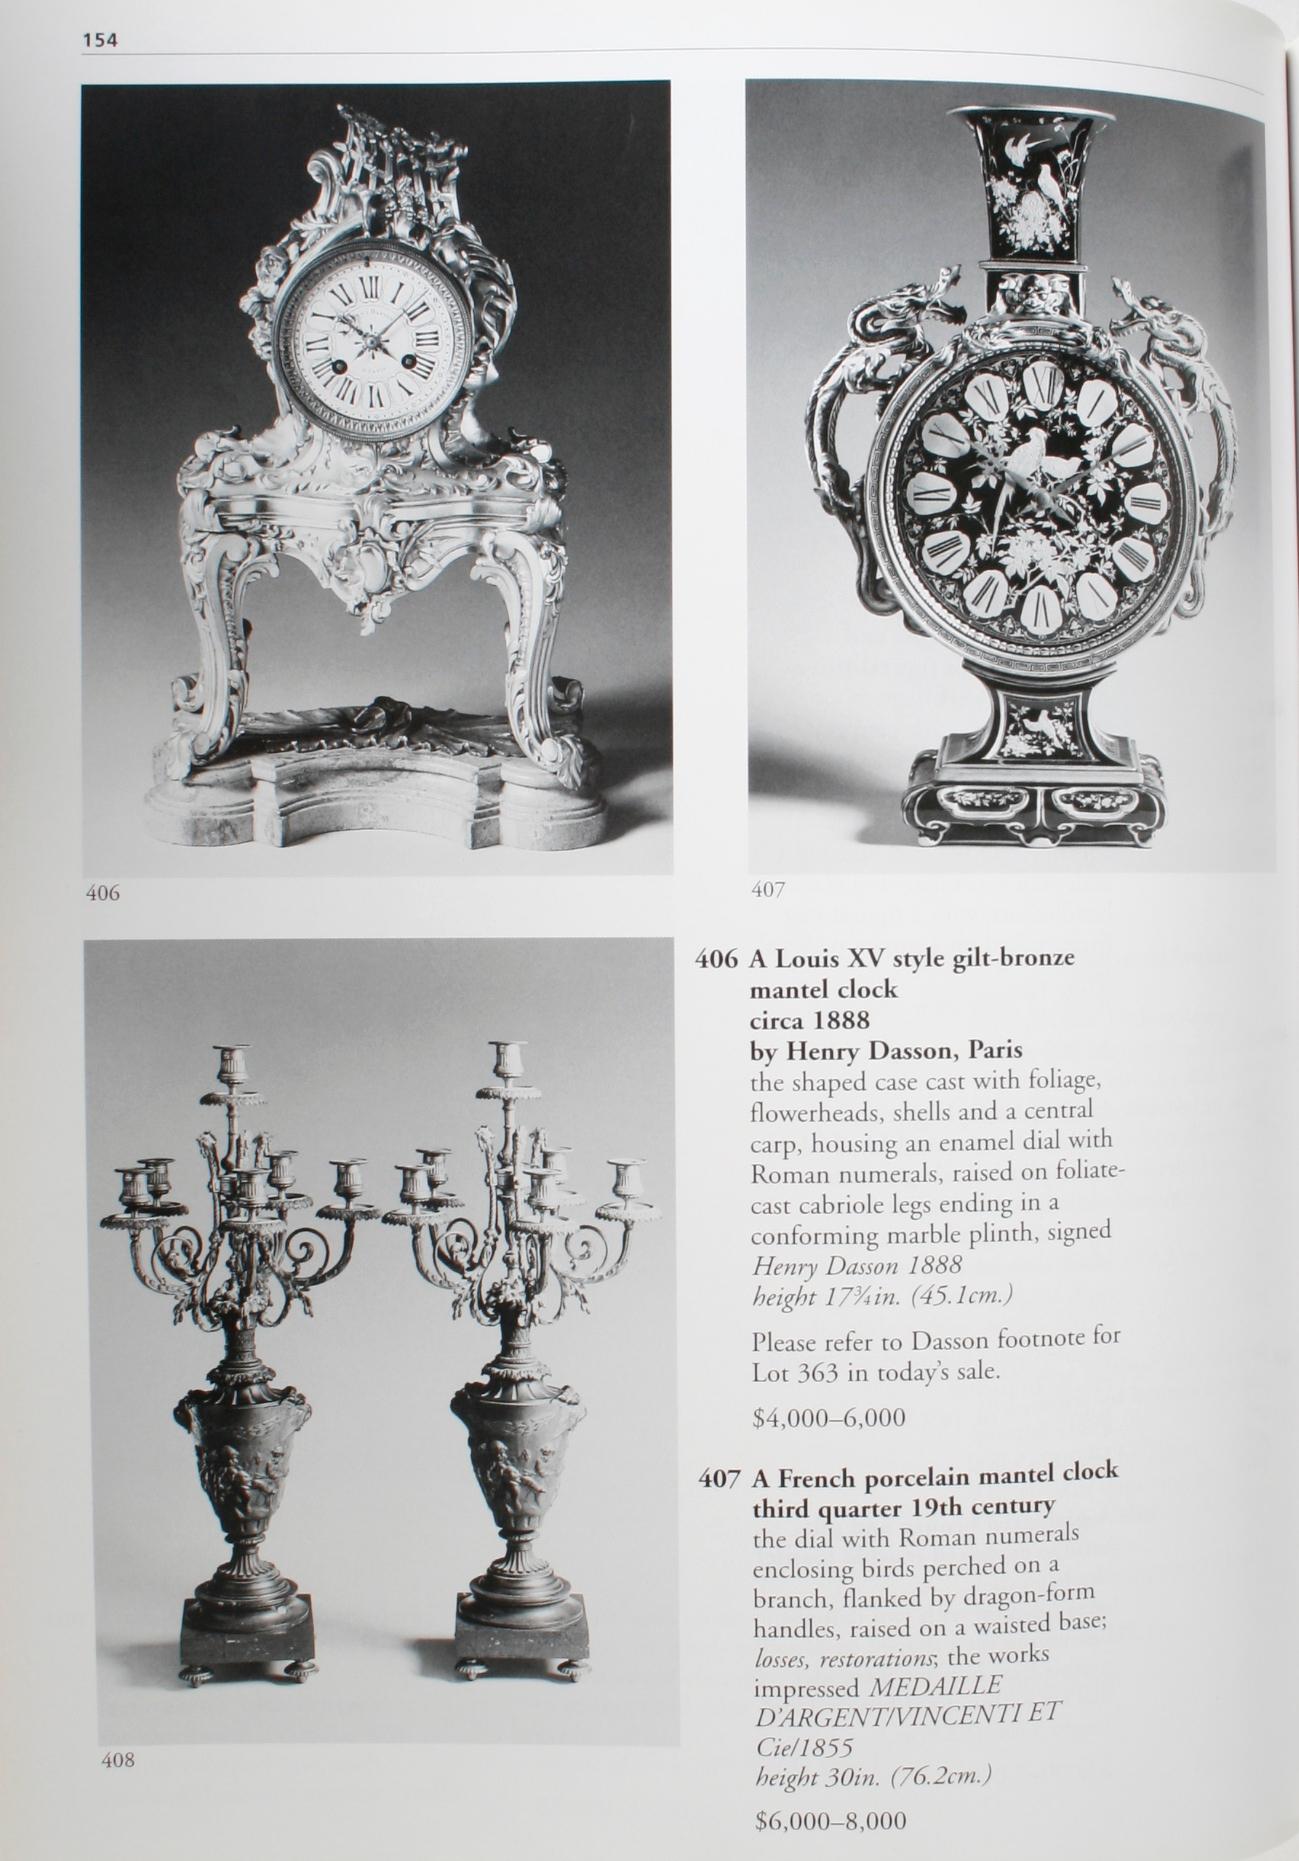 Meubles, céramiques et décorations Sotheby's, succession de George Parker, Jr. en vente 11